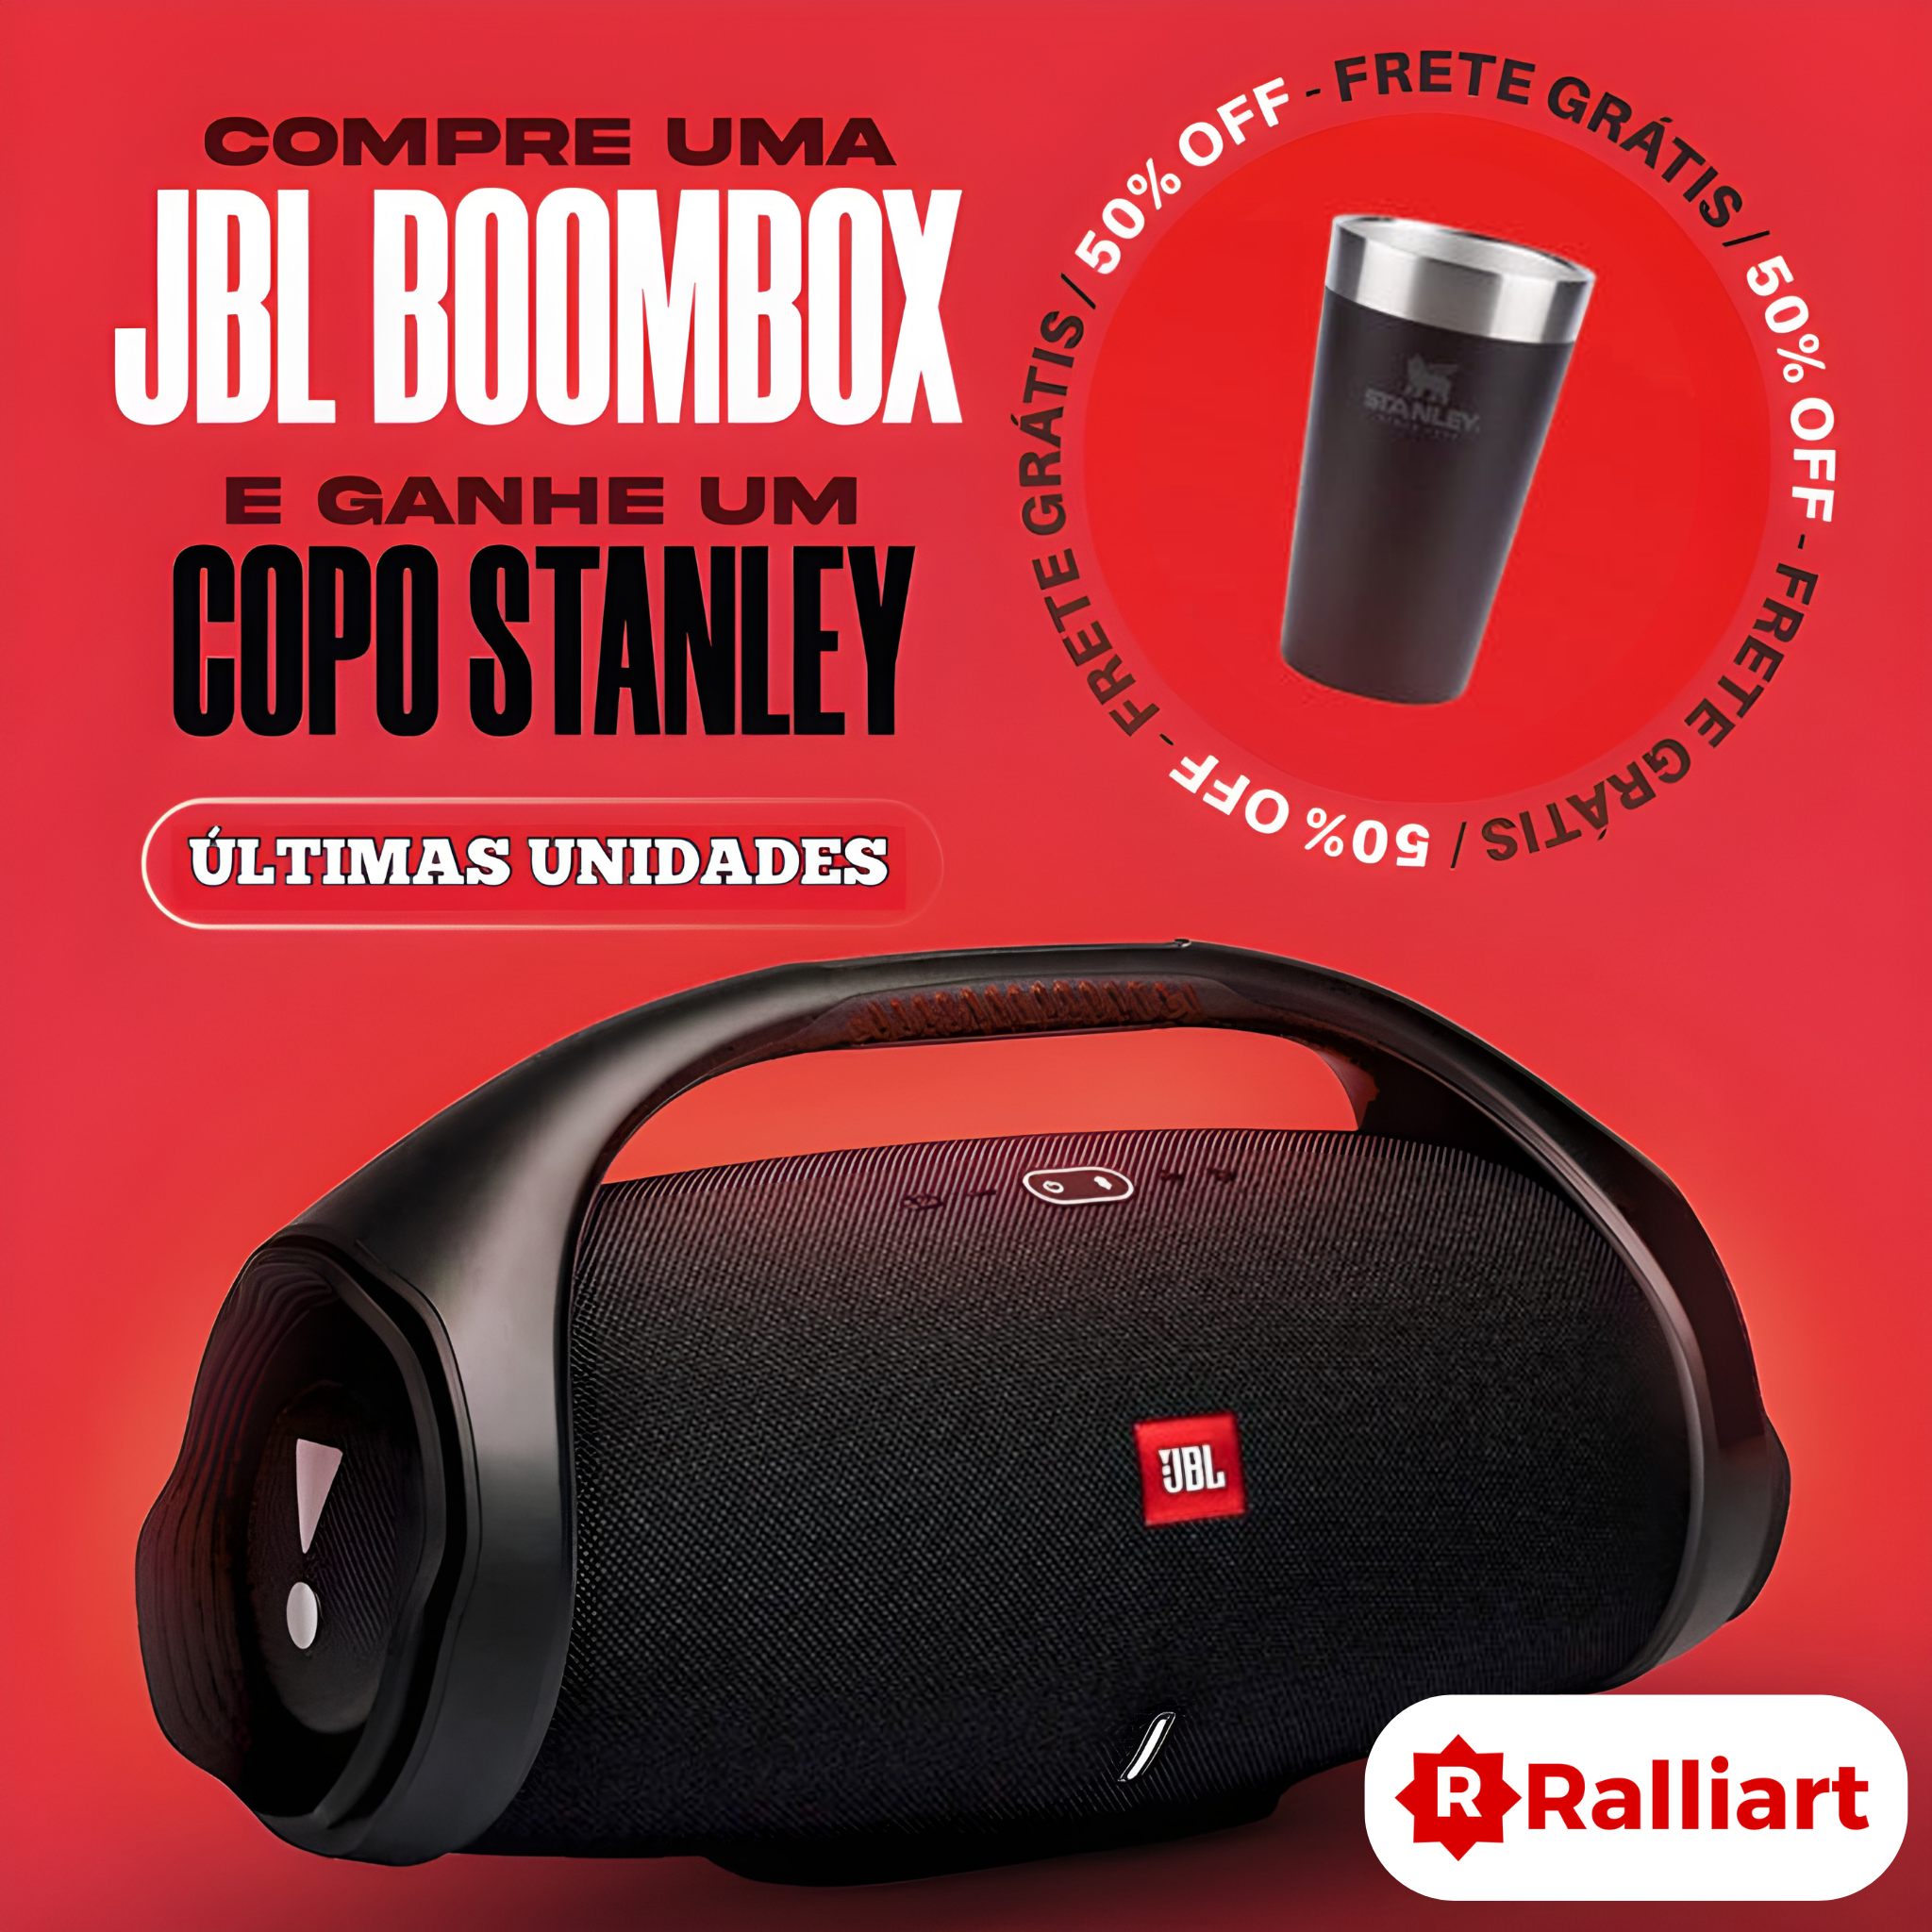 Caixa De Som JBL Boombox 2 a prova D'gua Bluetooth Original + Copo Sta